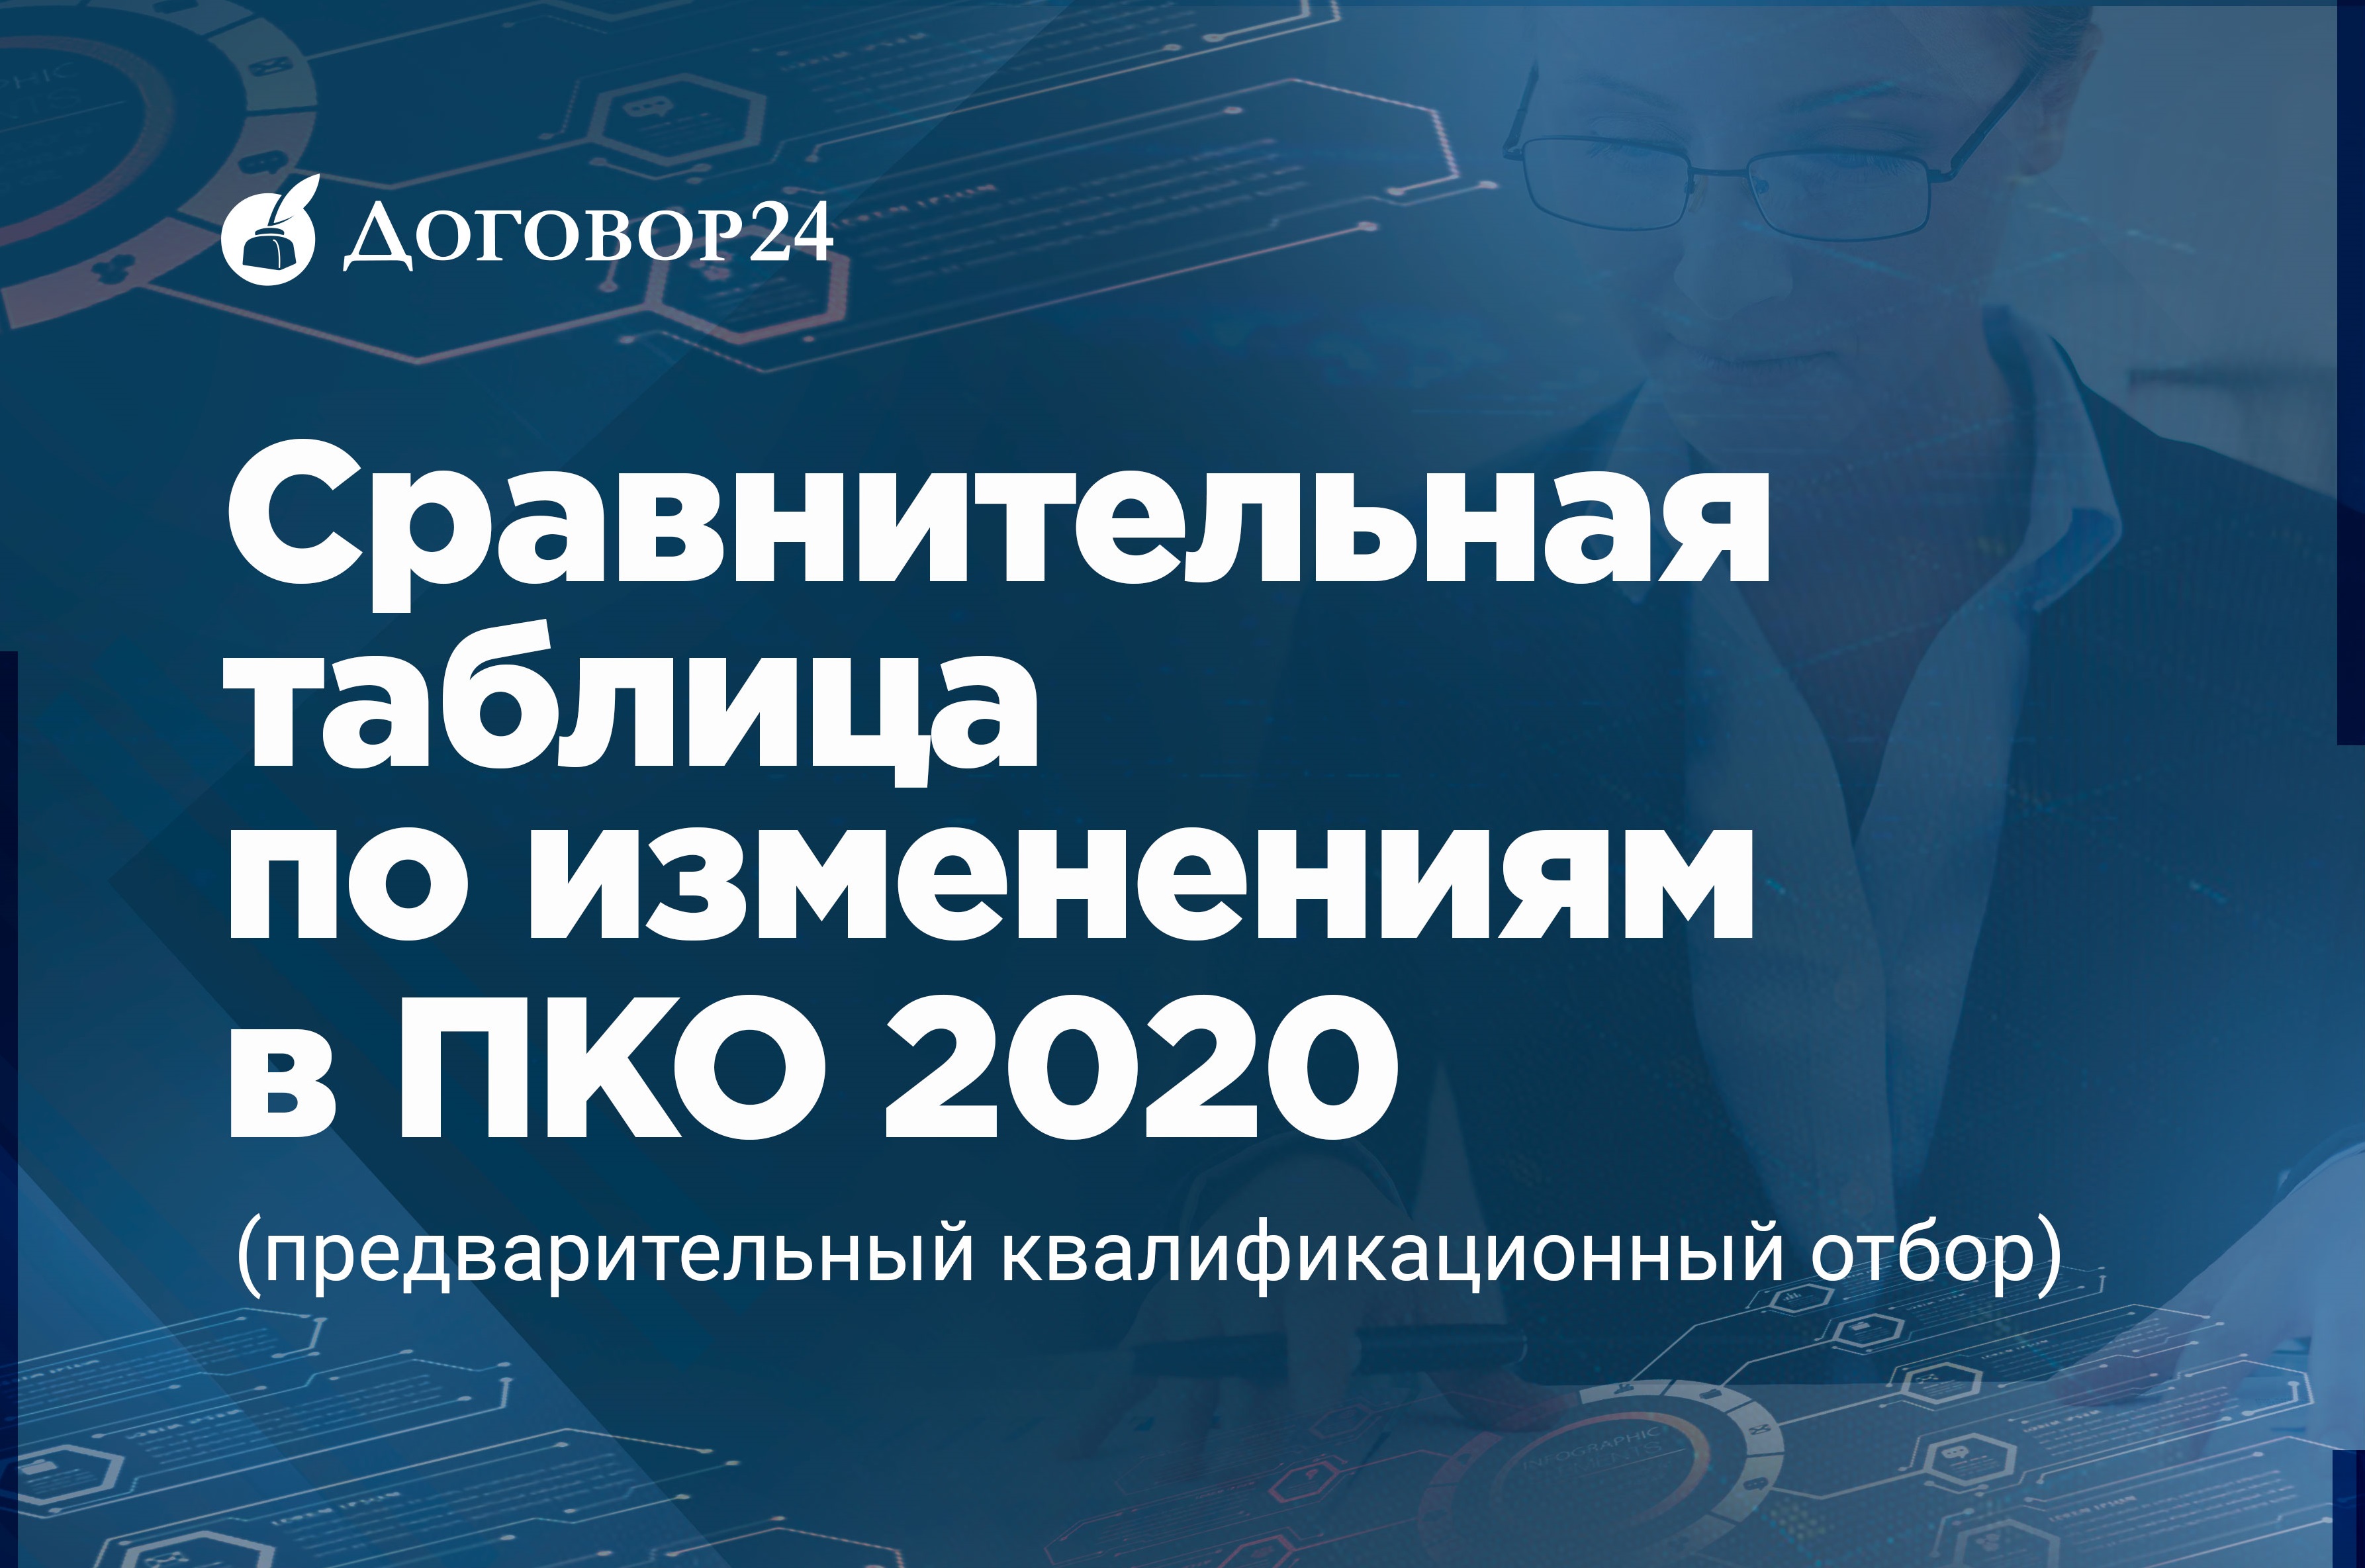 Предварительного Квалификационного Отбора (ПКО) 2020